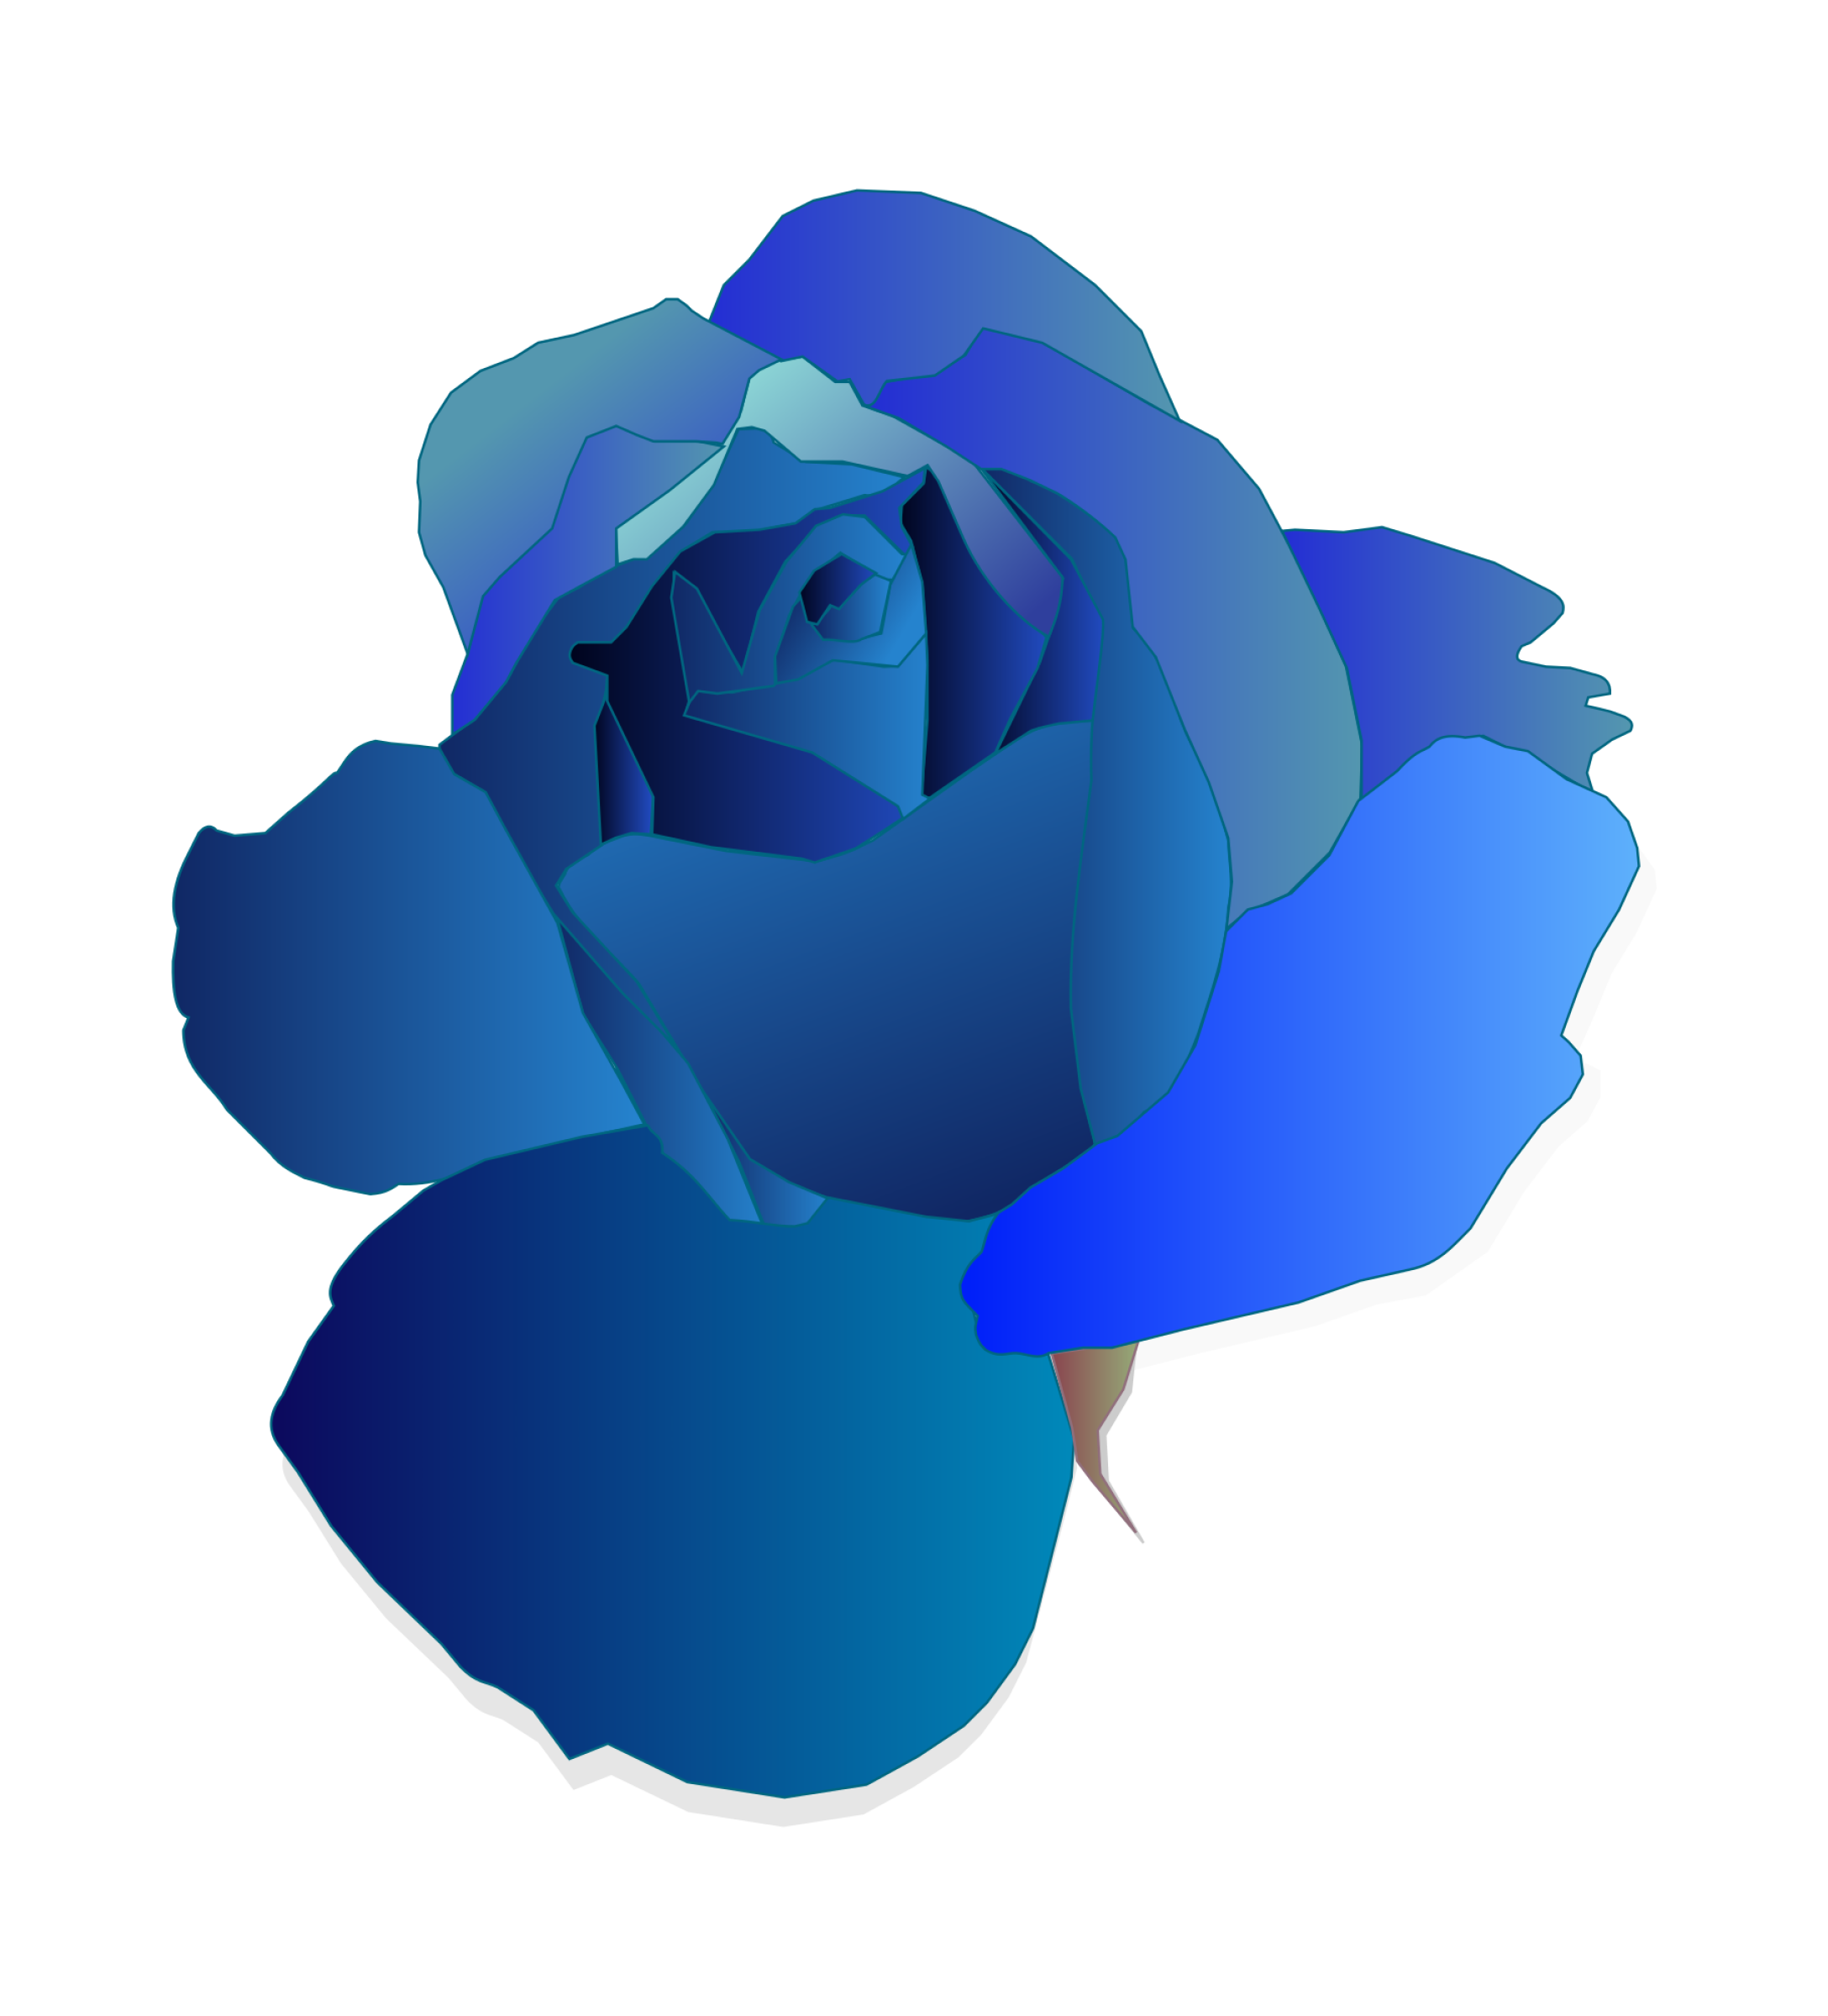 Blue Rose Gratuit PNG image